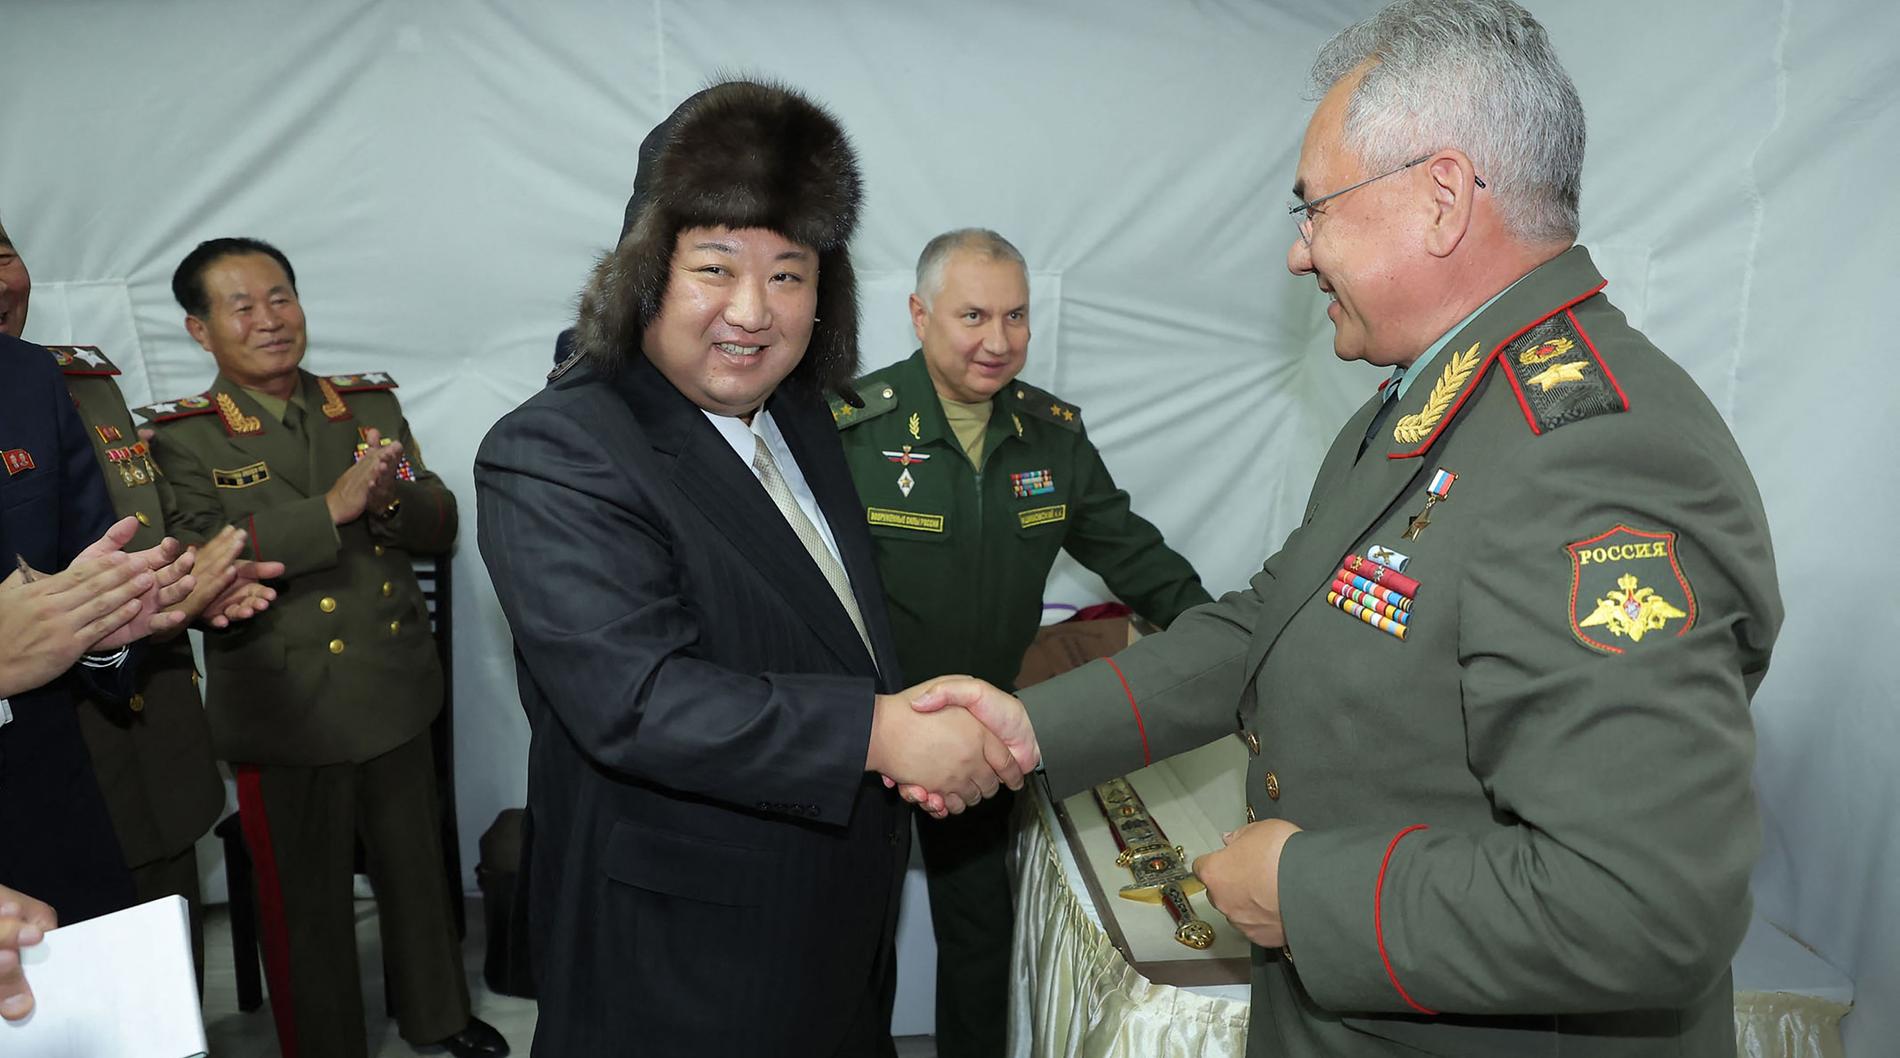 Kim ha ricevuto in dono dai russi armi e un cappello di cuoio